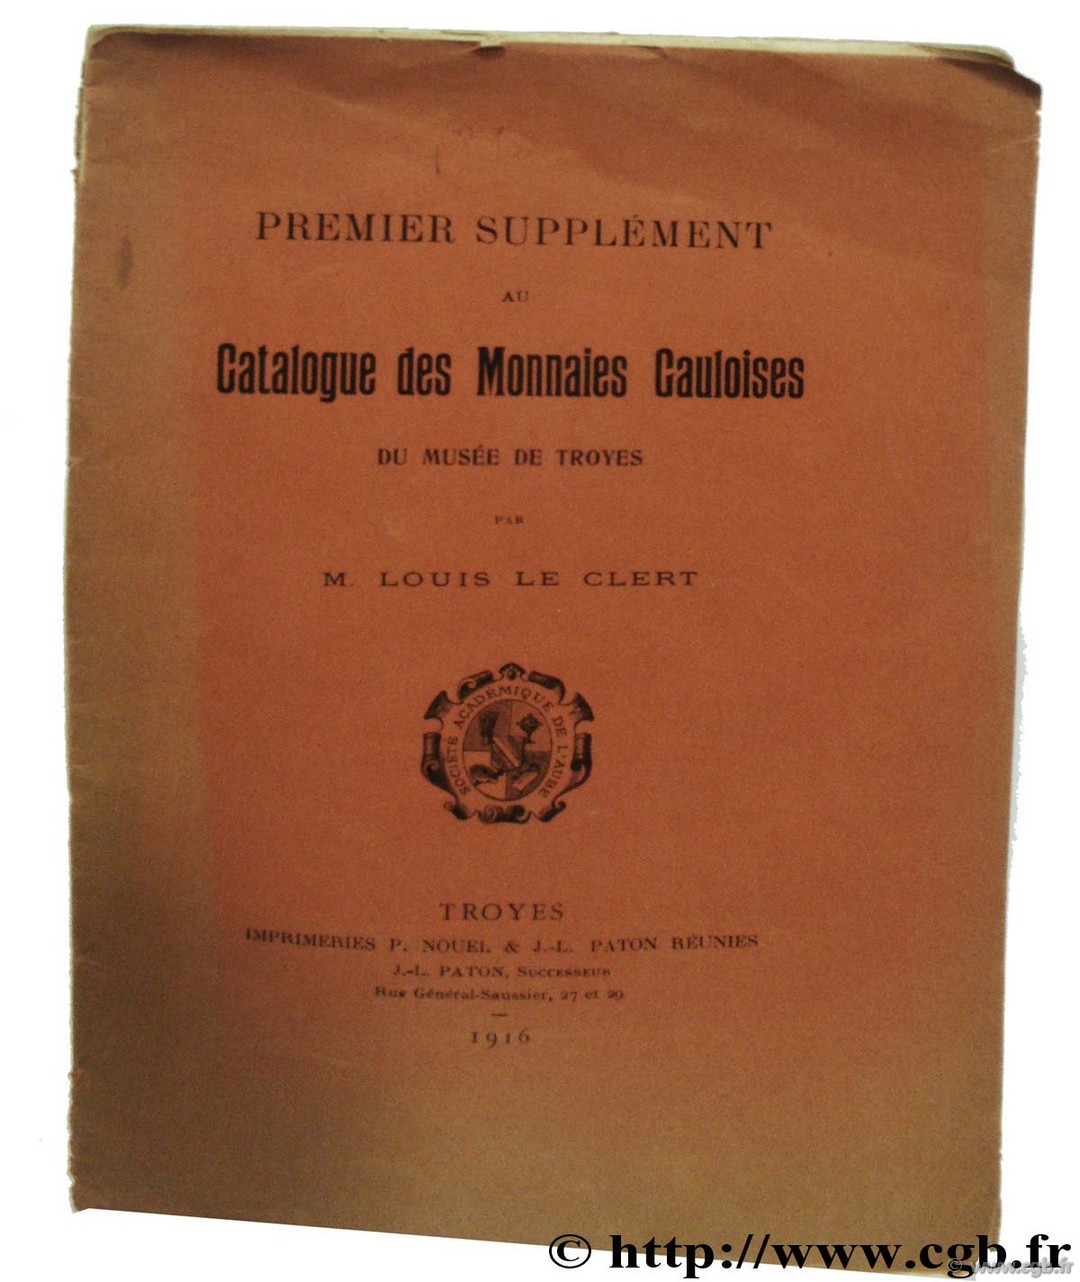 Premier supplément au Catalogue des Monnaies Gauloises du musée de Troyes LE CLERT L.